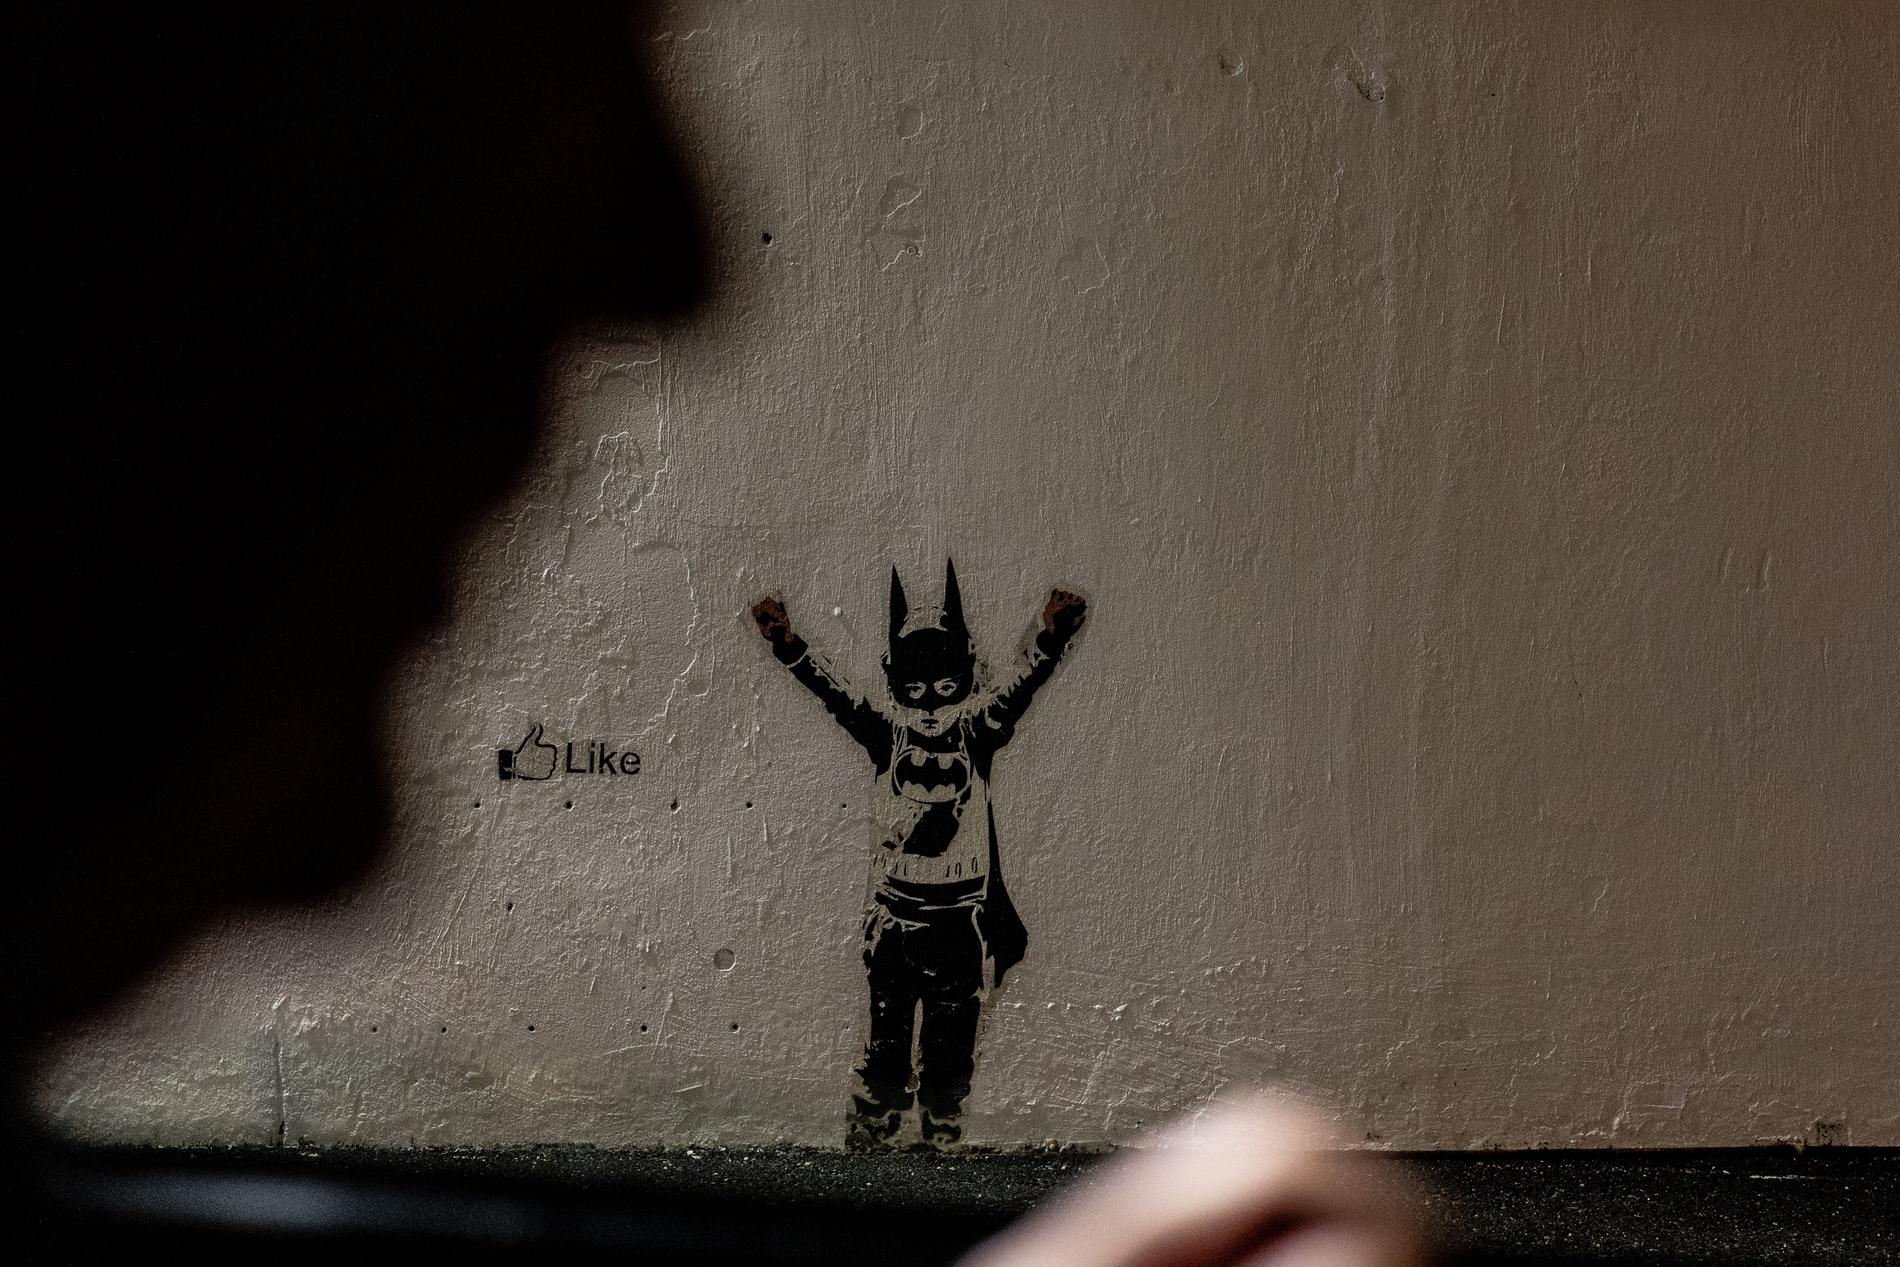 Bat-kid er fortsatt godt synlig. Her valgte man rett og slett å male rundt gatekunsten da veggen ble pusset opp.